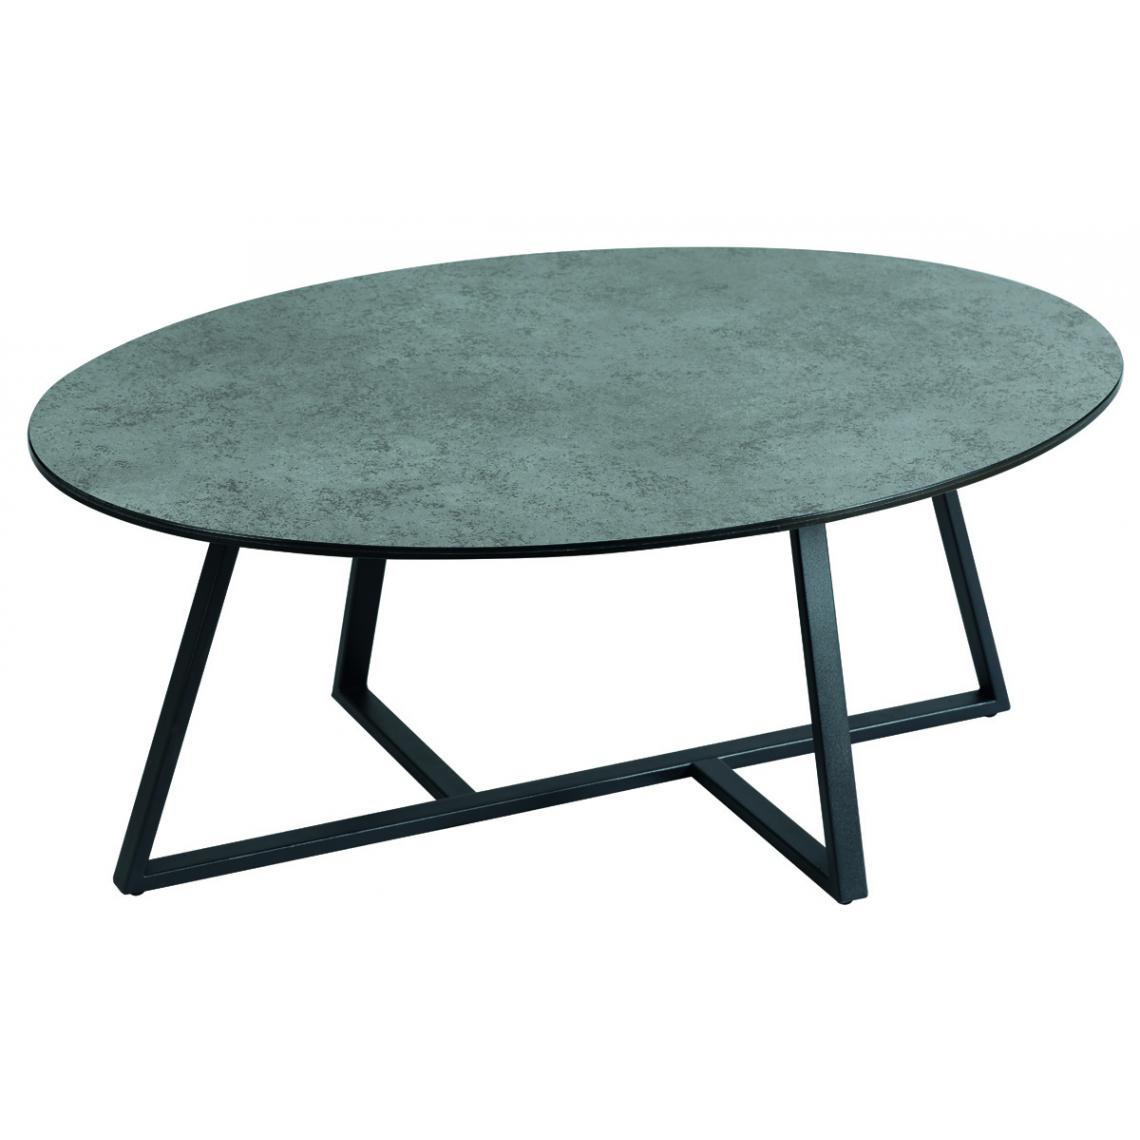 Pegane - Table basse ovale en verre / céramique coloris anthracite mat - Longueur 100 x profondeur 70 x hauteur 40 cm - Tables basses